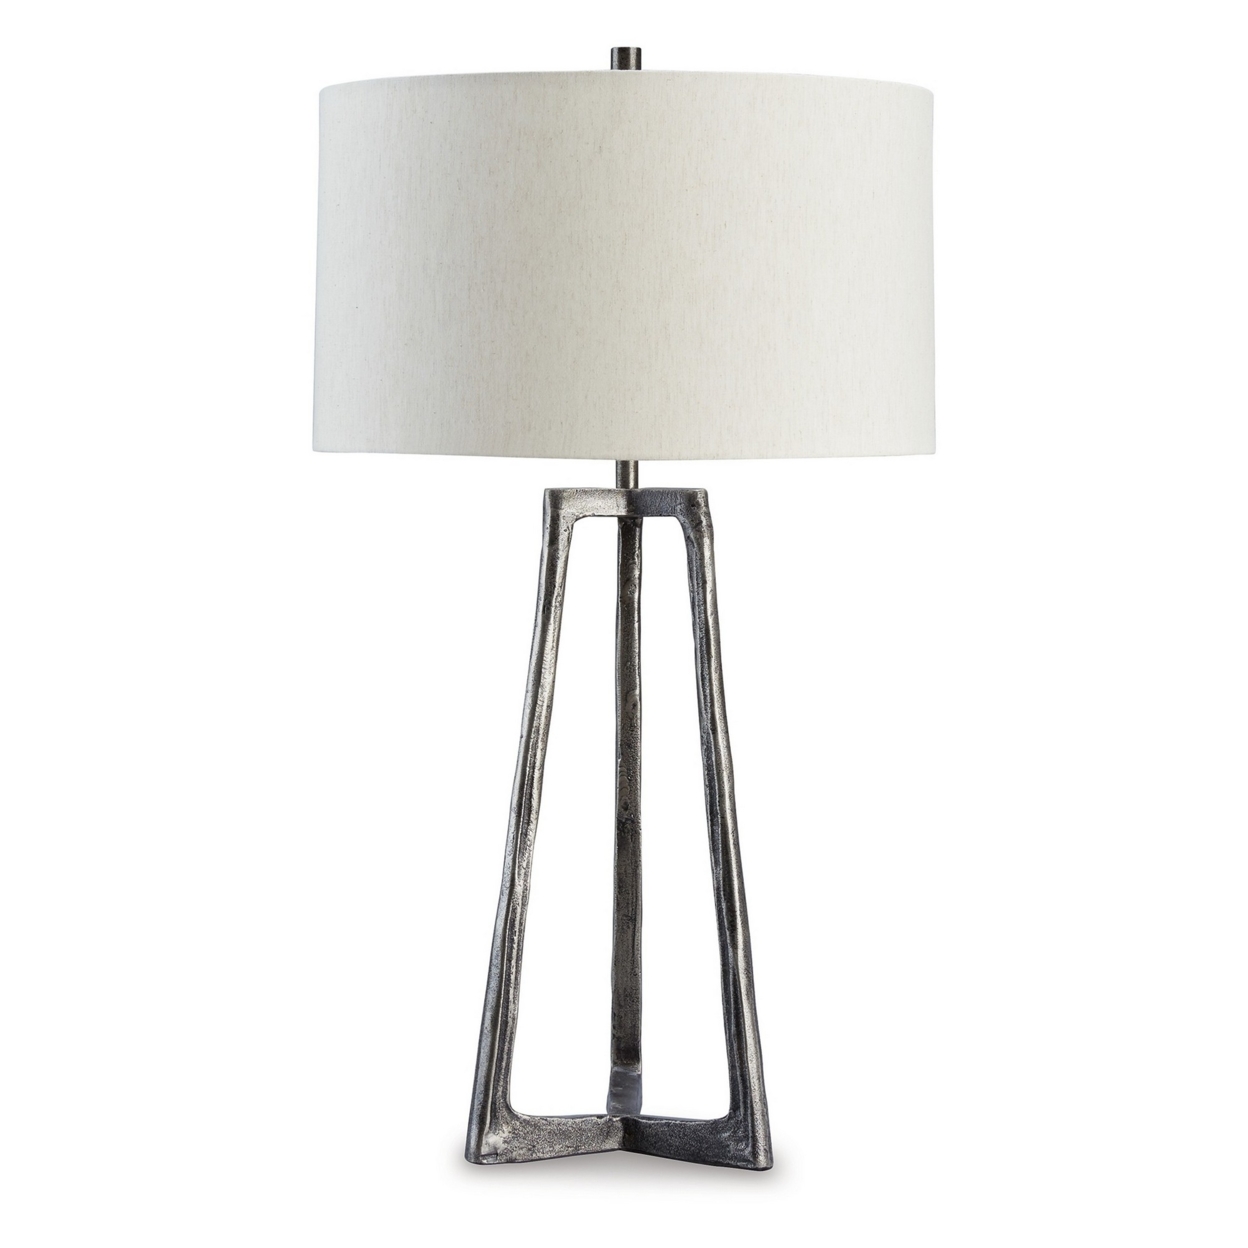 Nila 35 Inch Table Lamp, Pewter Gray Metal Base, 3 Way Switch, Drum Shade- Saltoro Sherpi